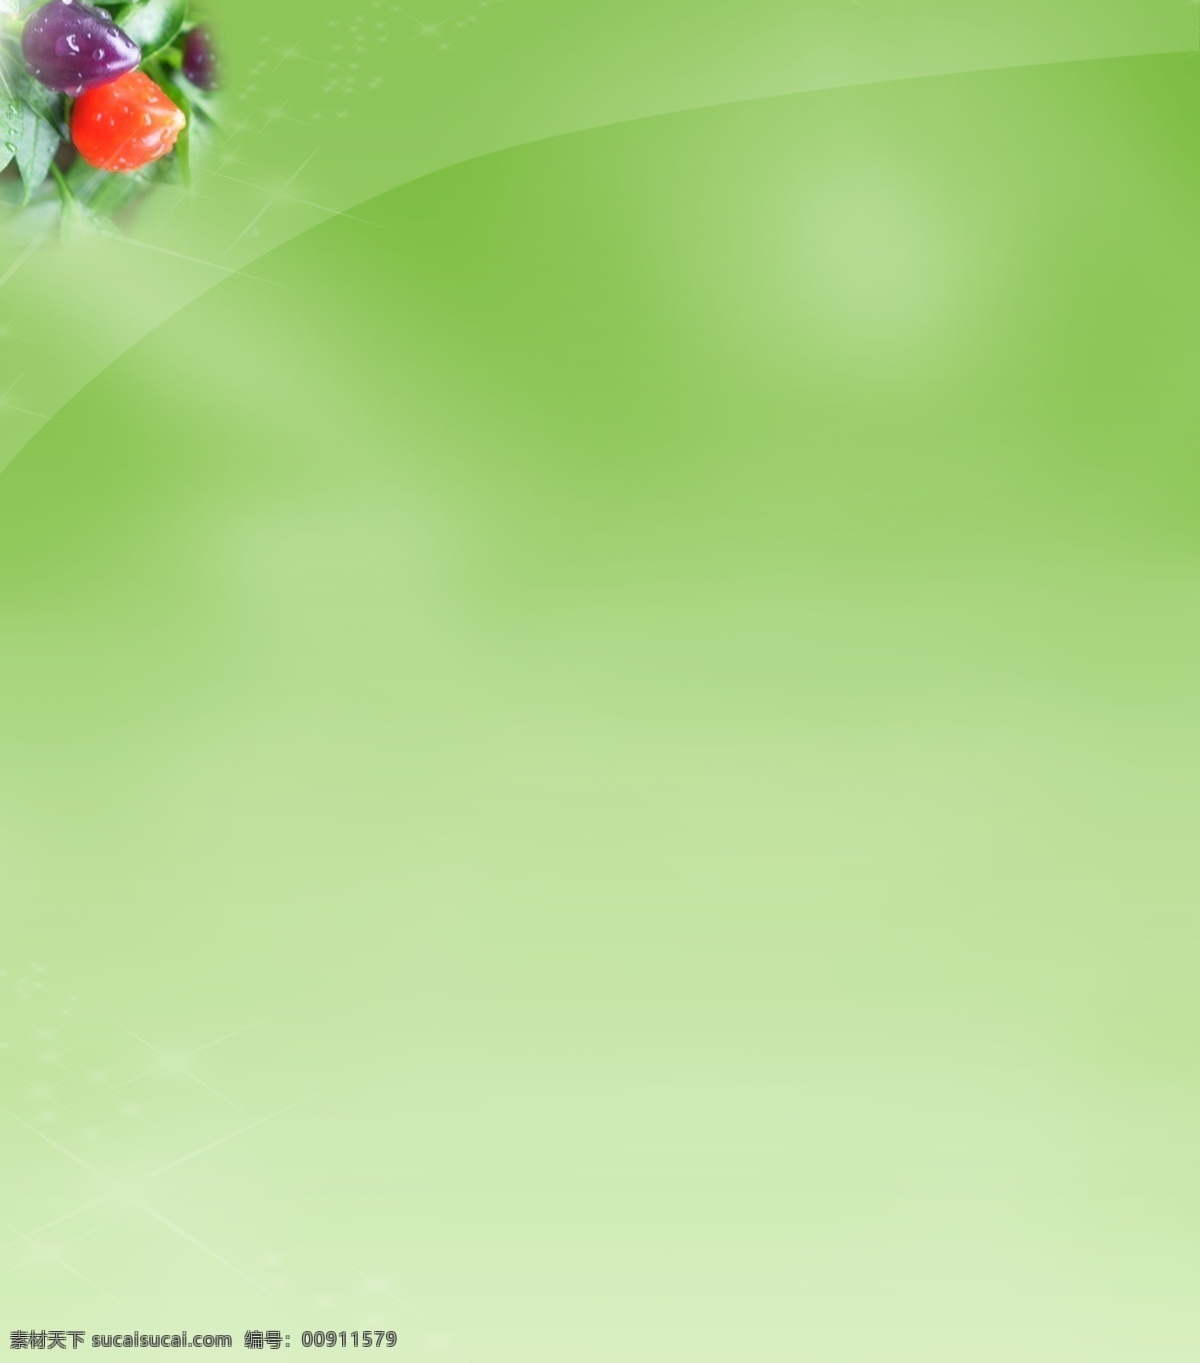 高清psd 淡绿色 果园 背景 背景模板 淡绿色背景 绿色 水果背景图 网页背景 果园背景 果园背景素材 psd源文件